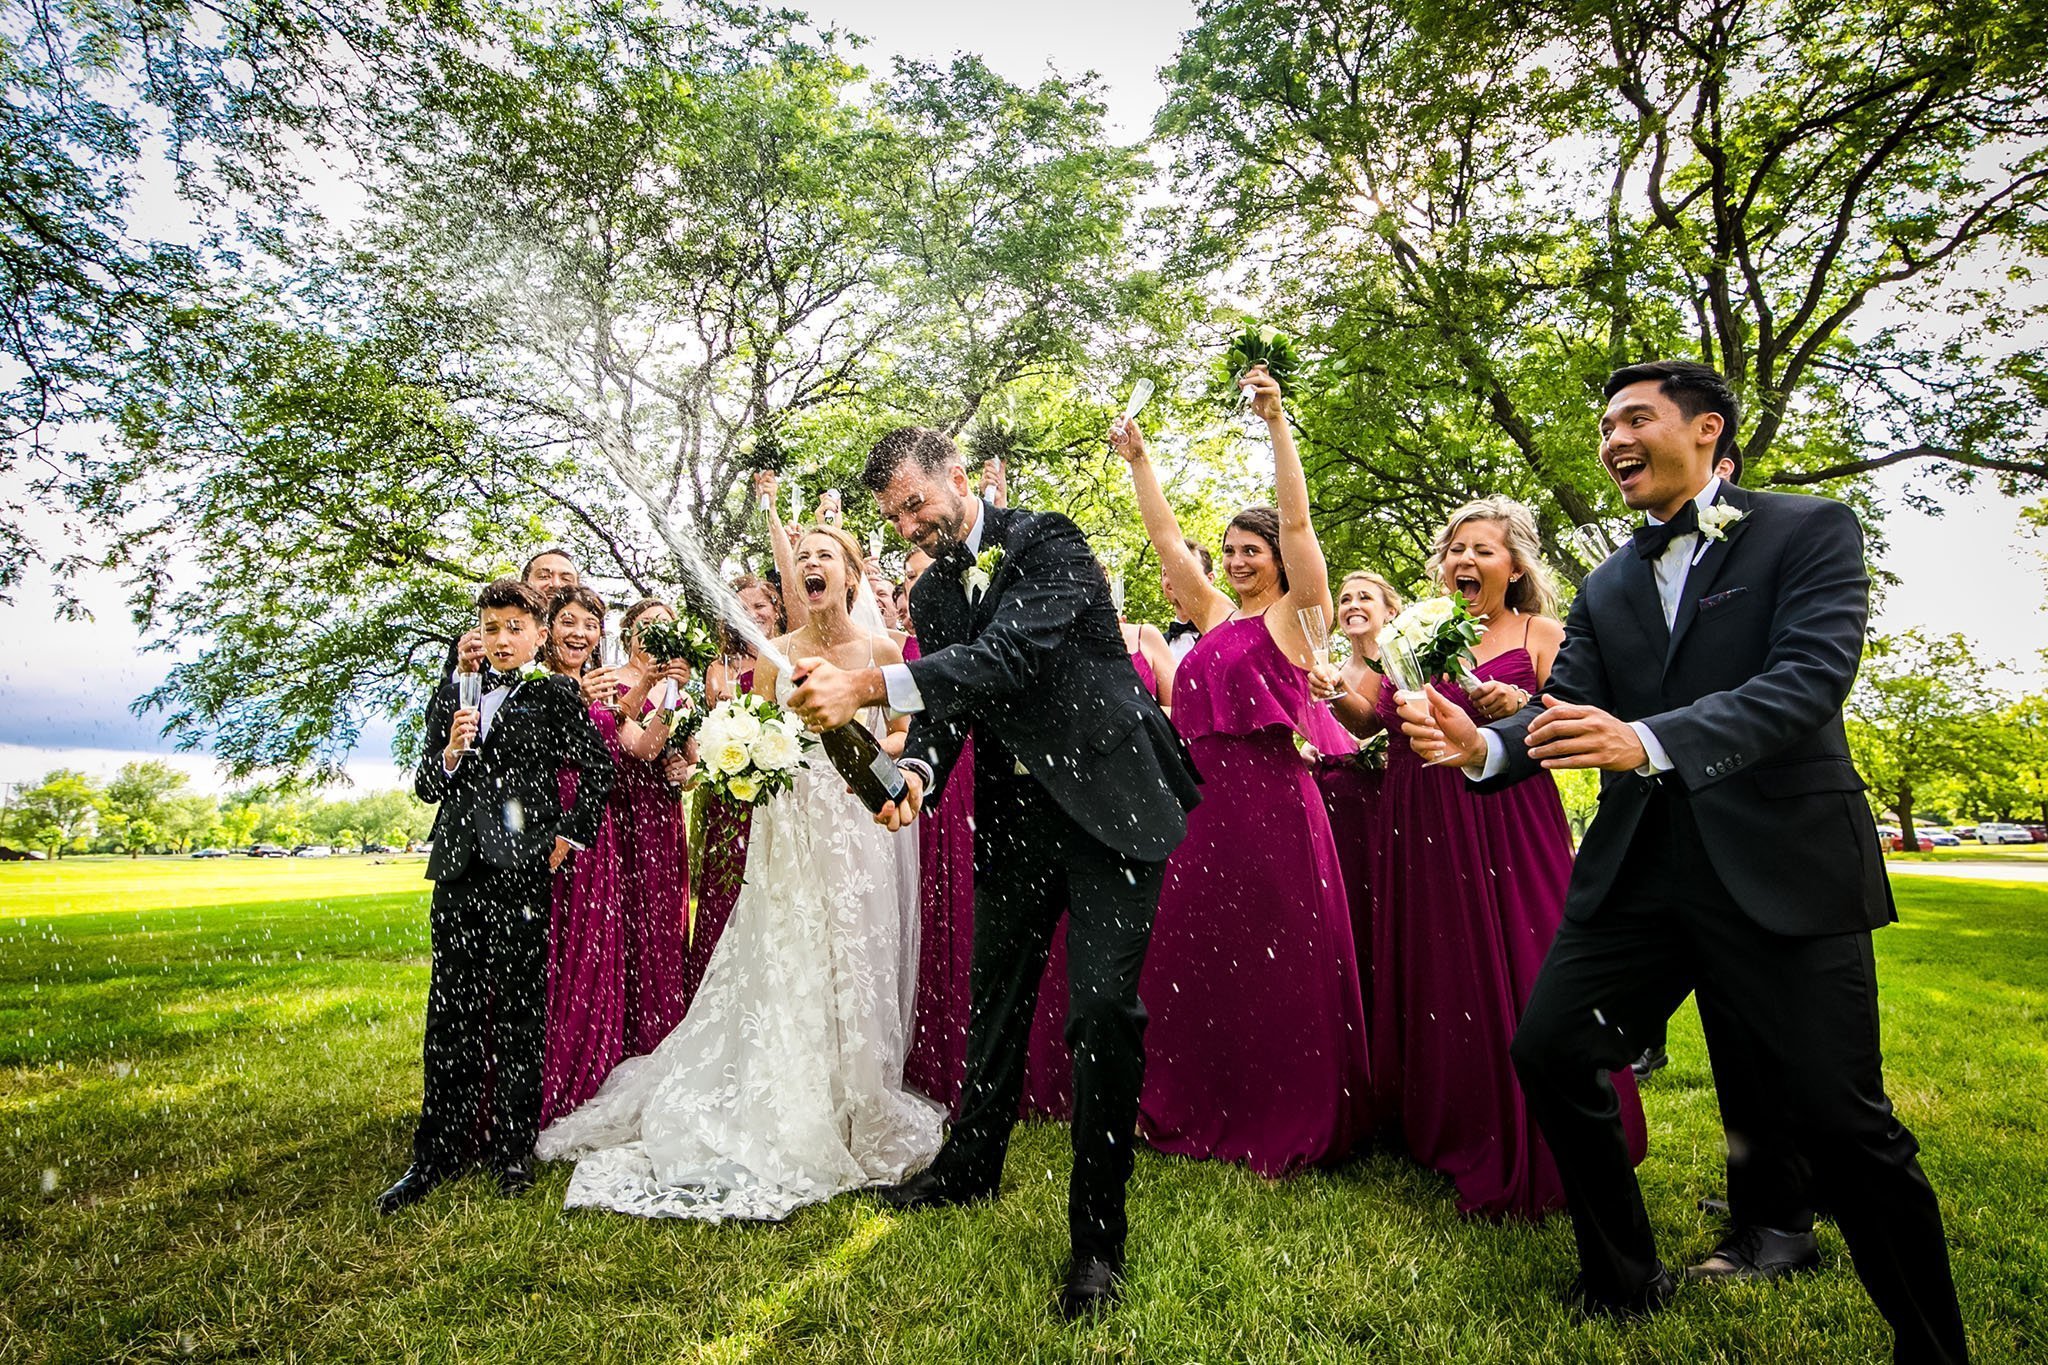 Bucktown wedding photographer - Chicago